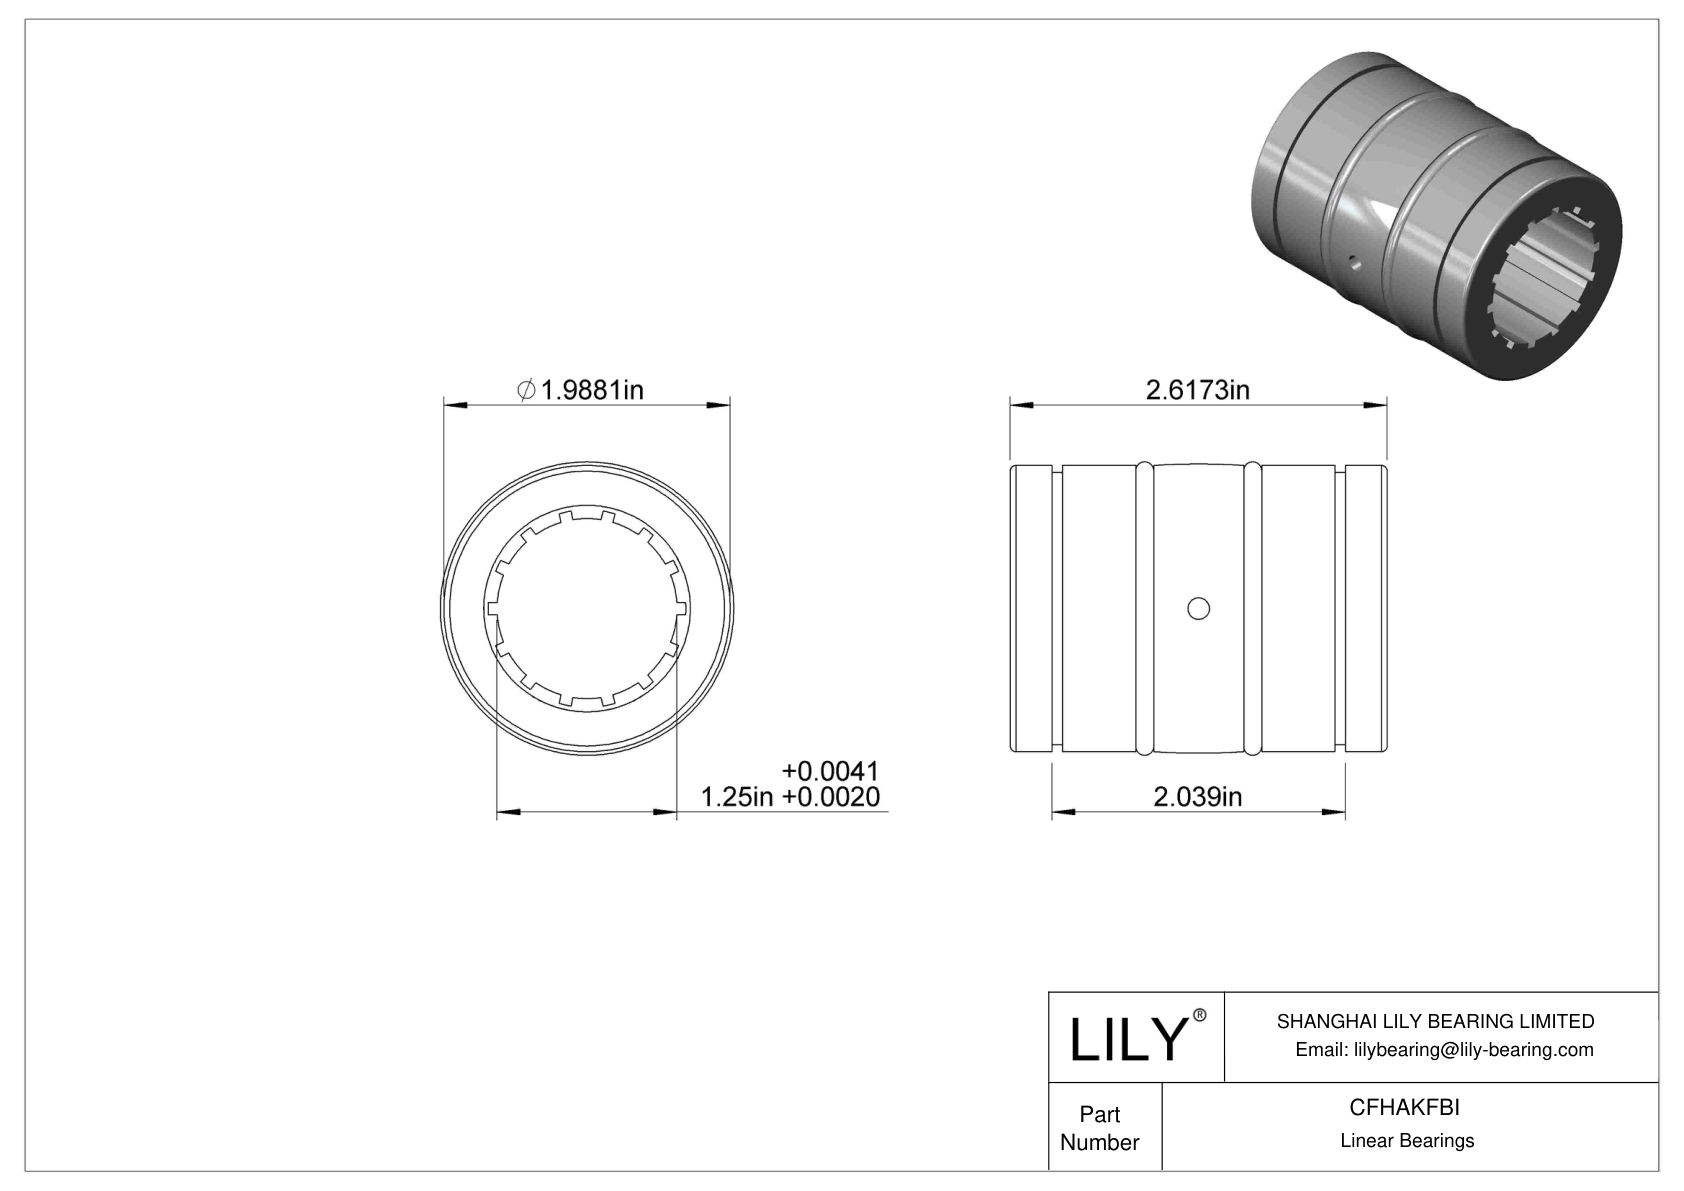 CFHAKFBI Dust-Resistant Linear Sleeve Bearings cad drawing